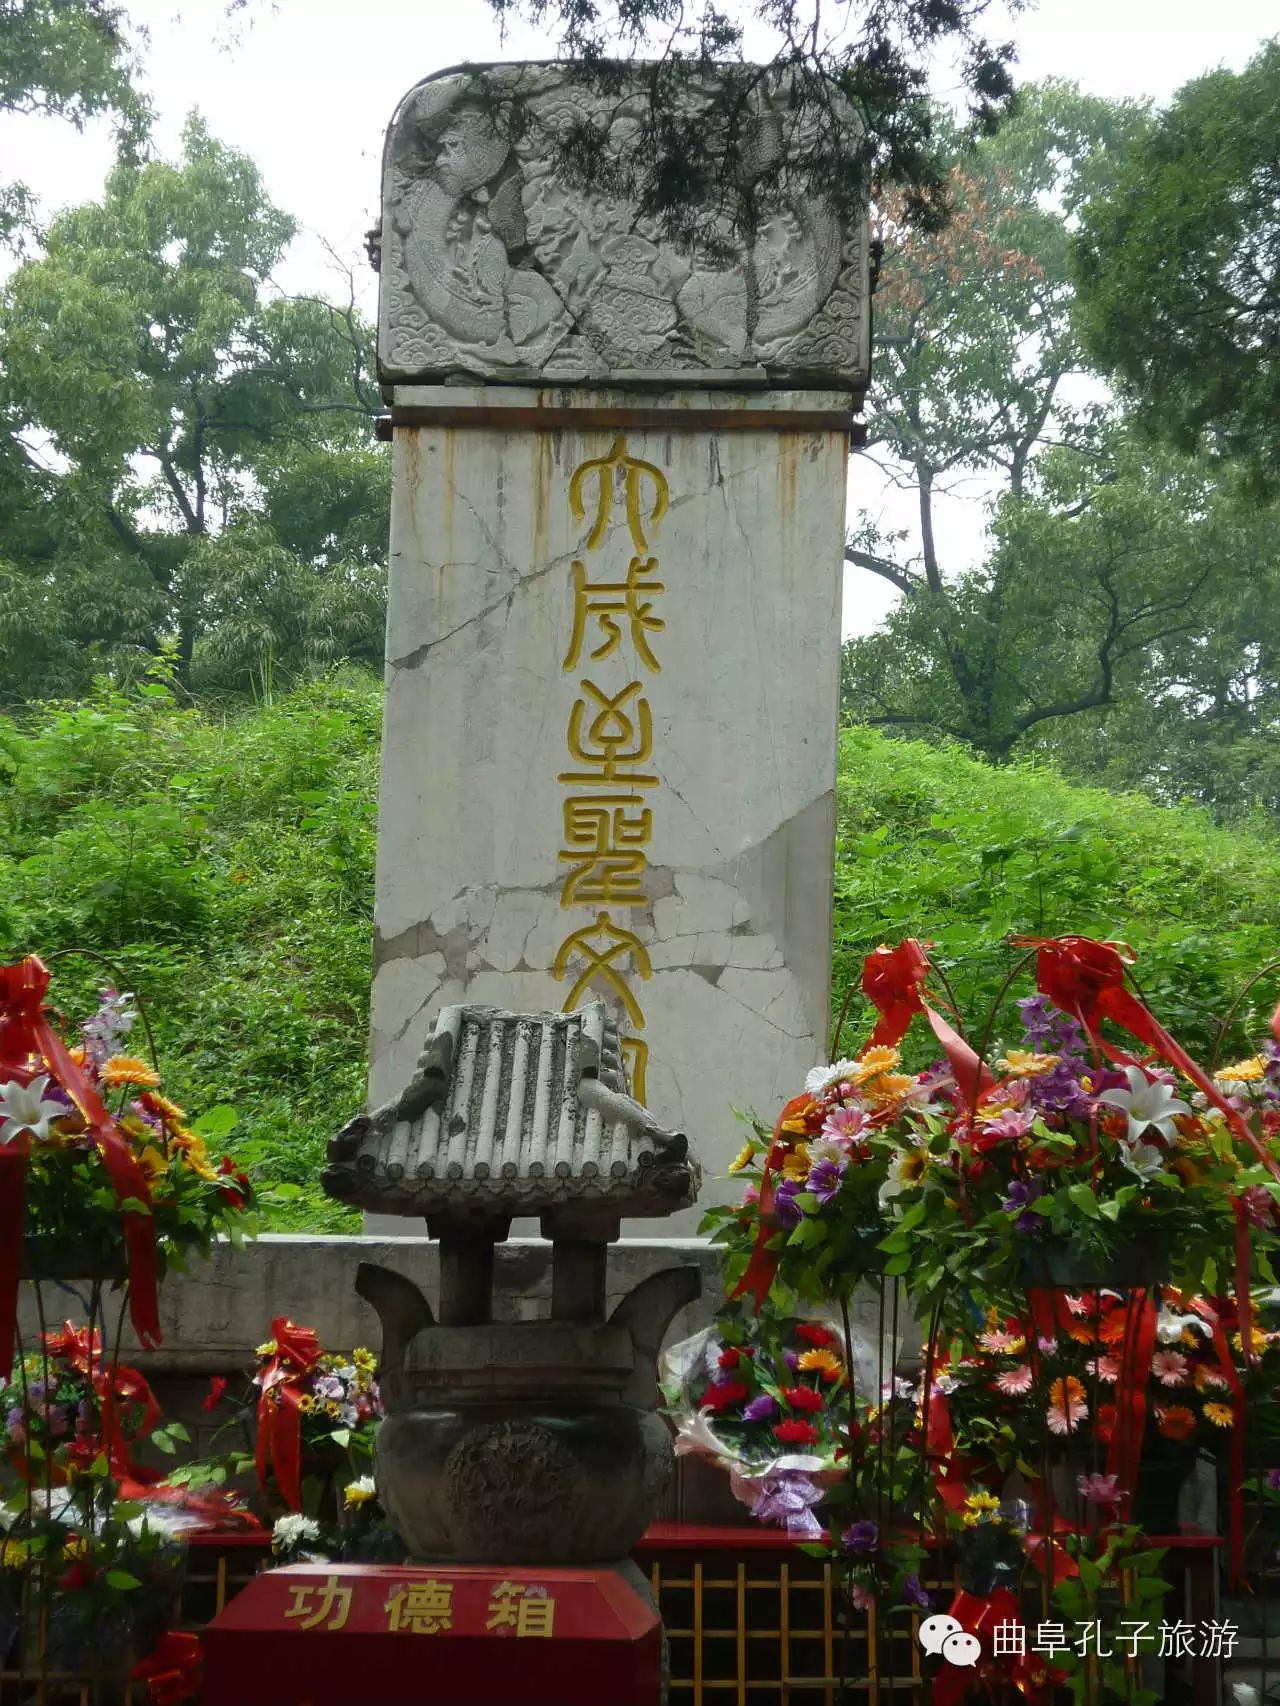 孔林又称"至圣林",是埋葬孔子及其后裔的家族墓地,孔子祖孙三代埋葬于